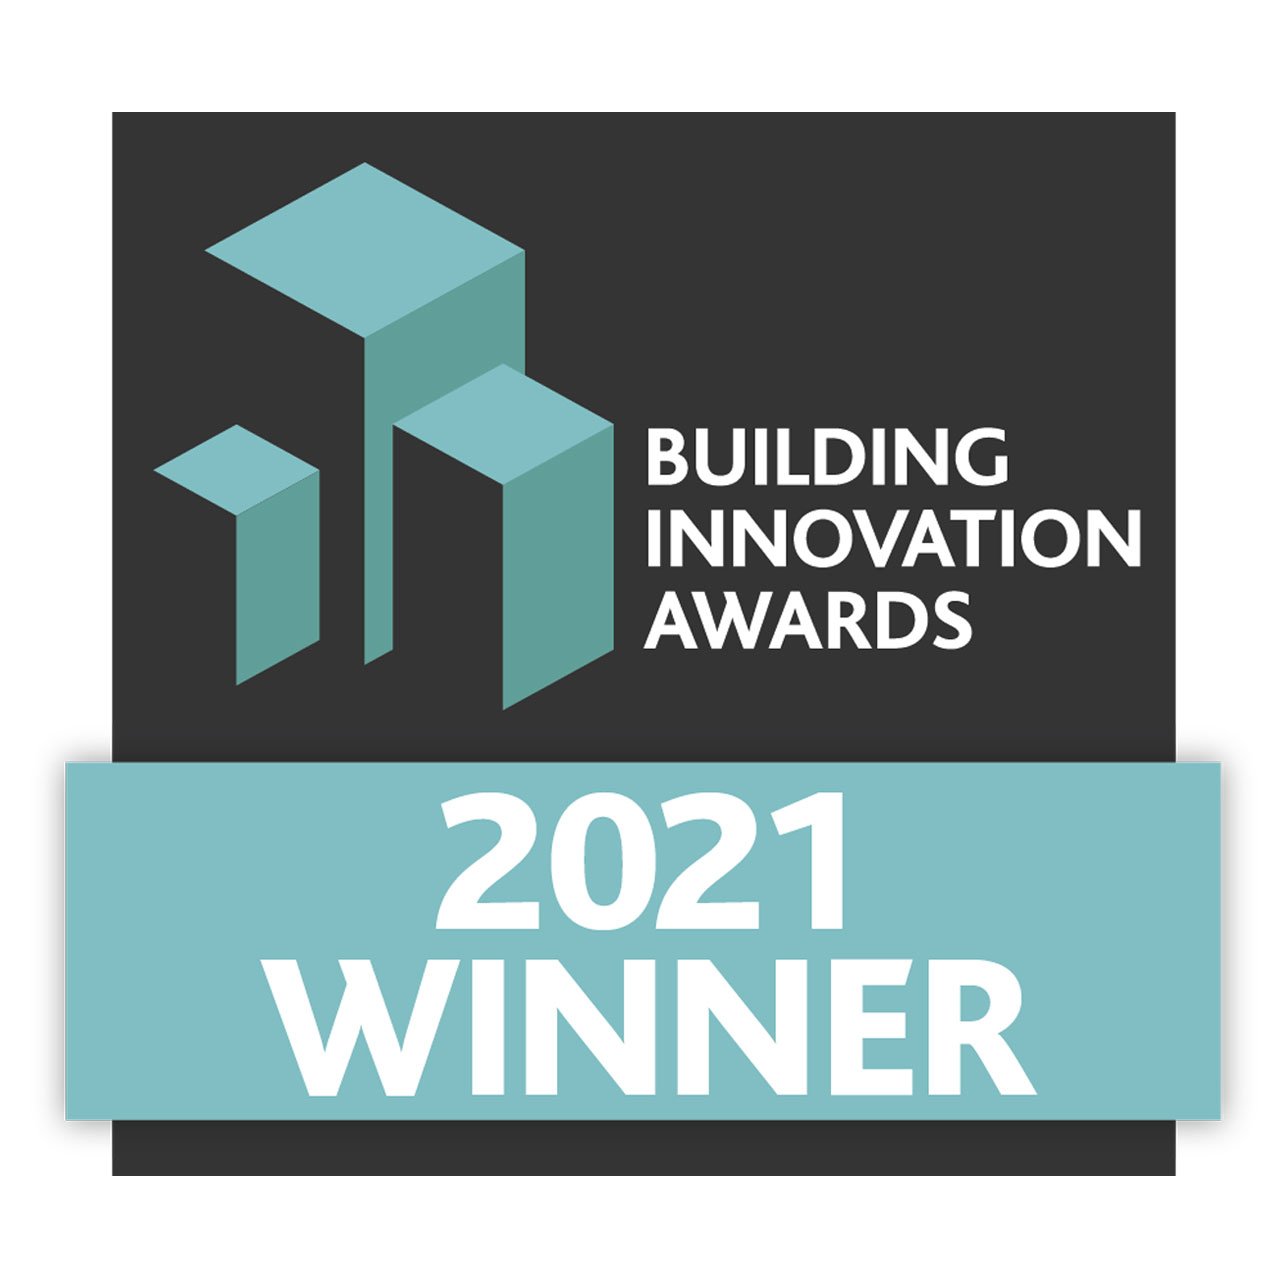 Baxi - Building Innovation Awards 2021 Winner